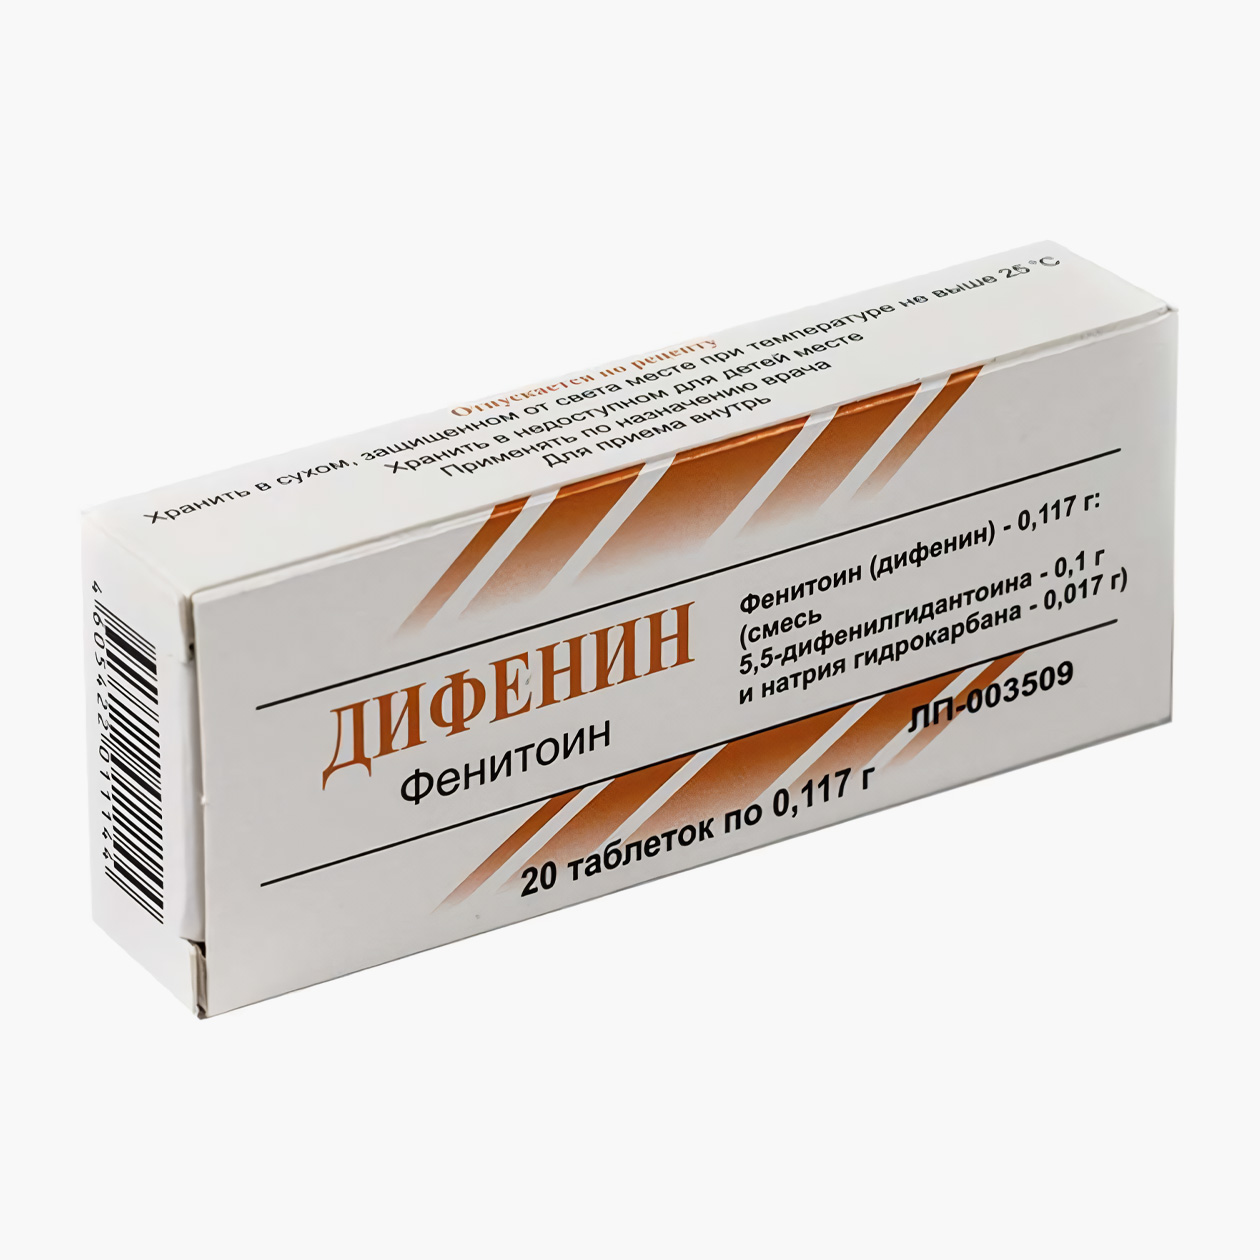 Цена упаковки с 20 таблетками фенитоина начинается от 77 ₽. Источник: asna.ru